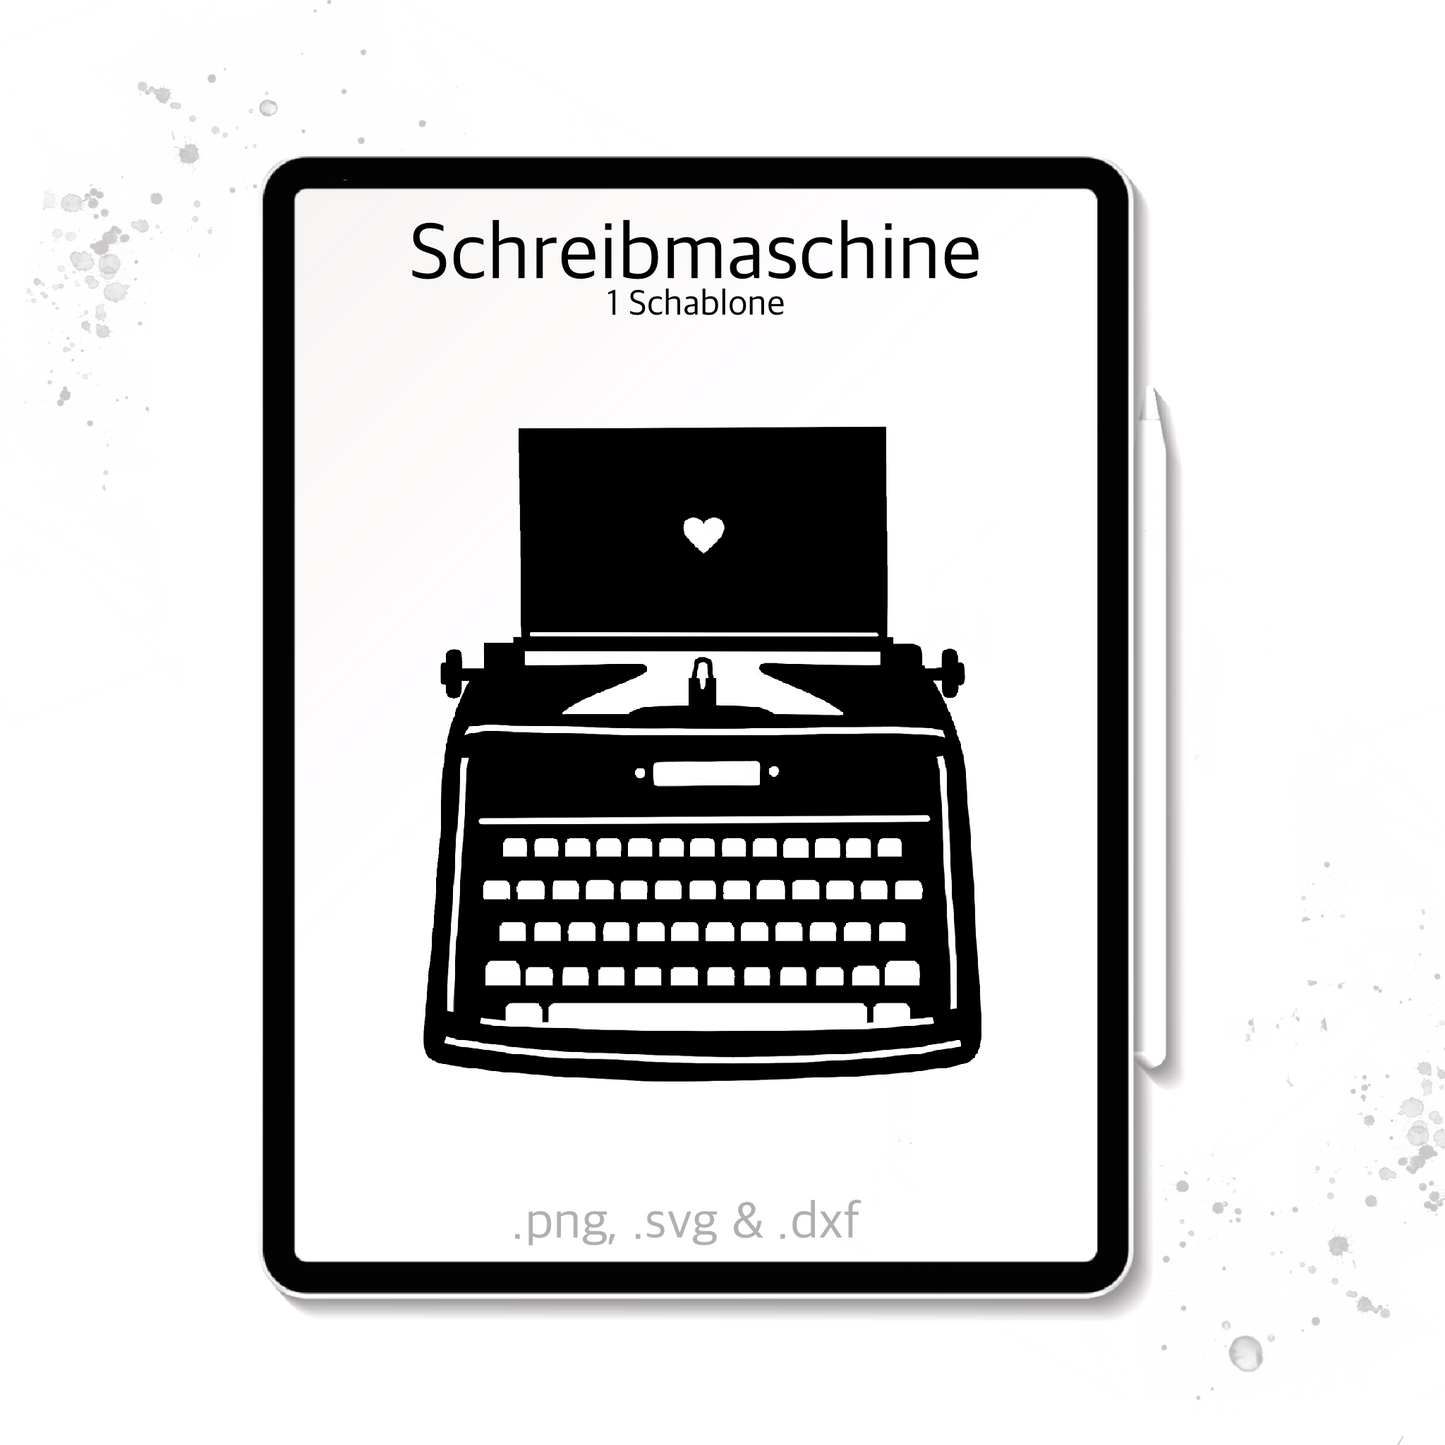 Plotterdatei / Laserdatei Schablone "Schreibmaschine" (.dxf, .svg und .png)